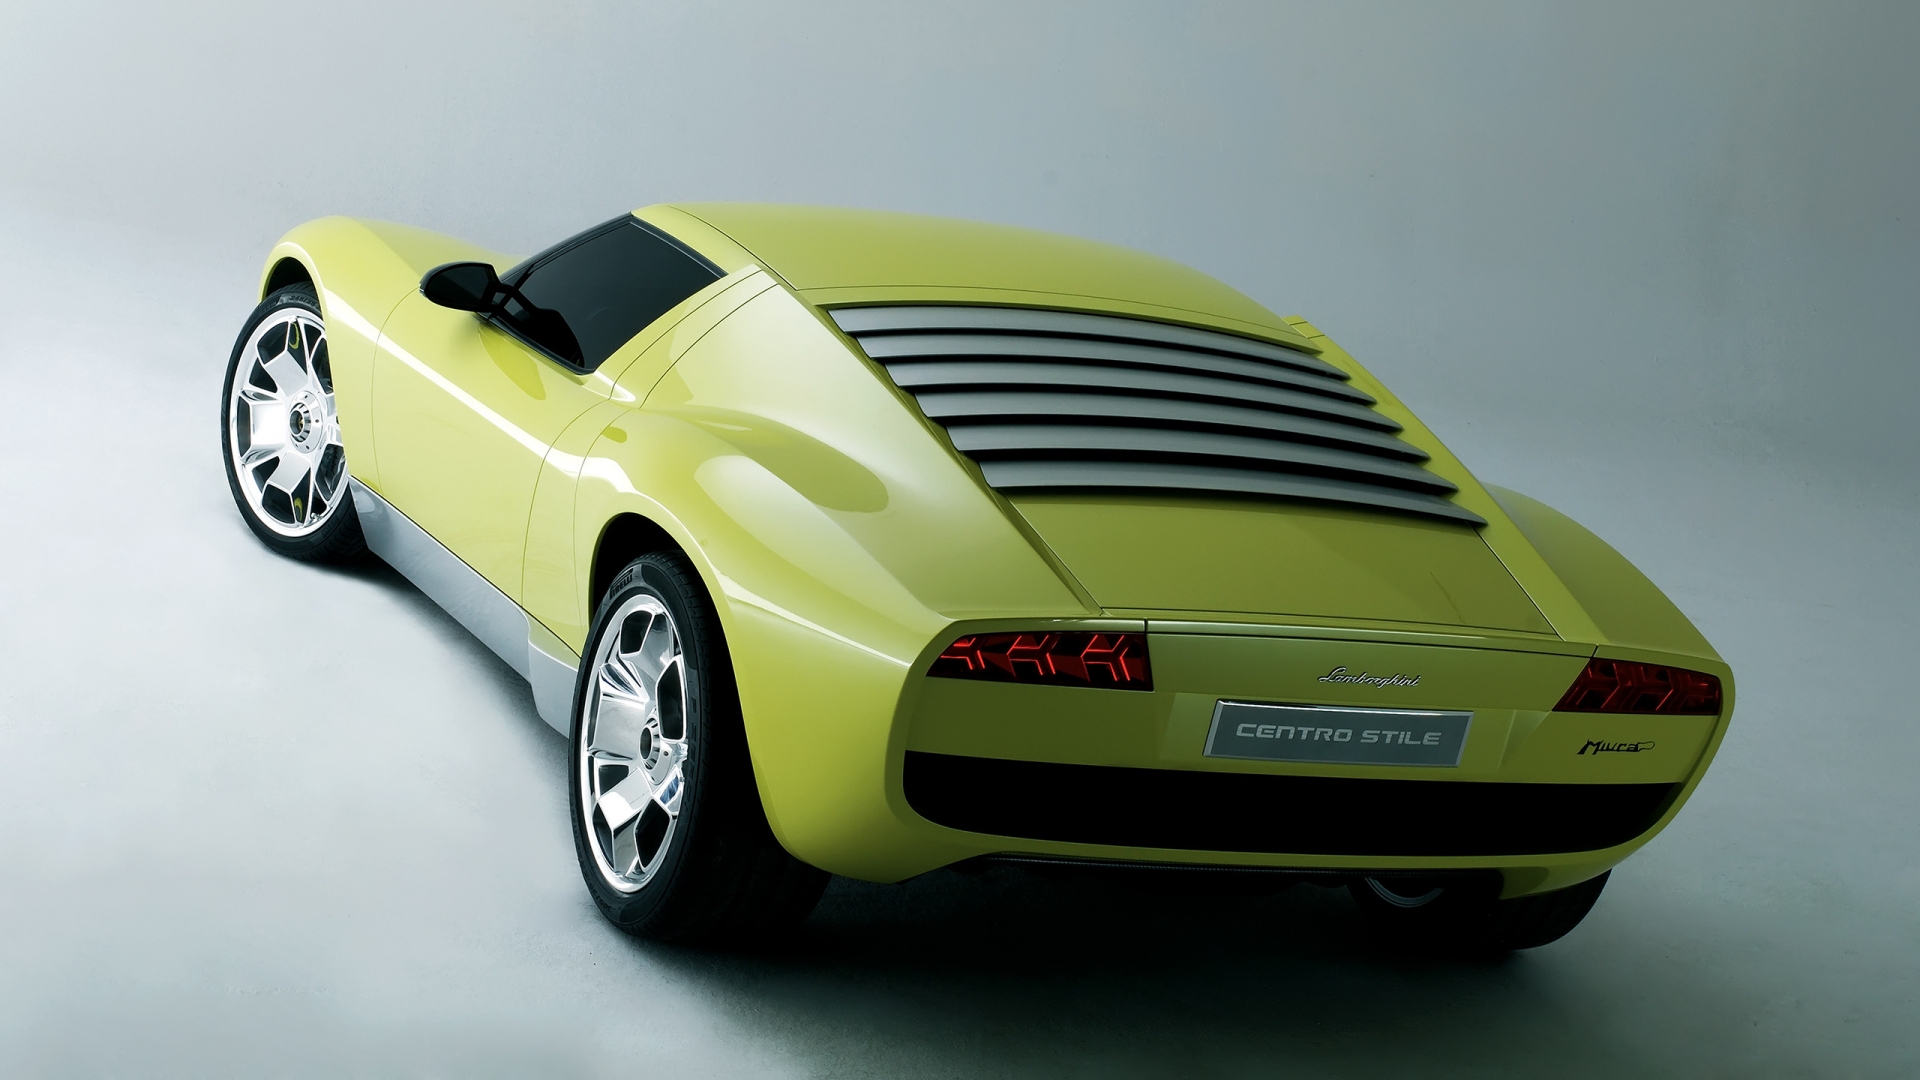 Lamborghini Miura Concept Rear for 1920 x 1080 HDTV 1080p resolution